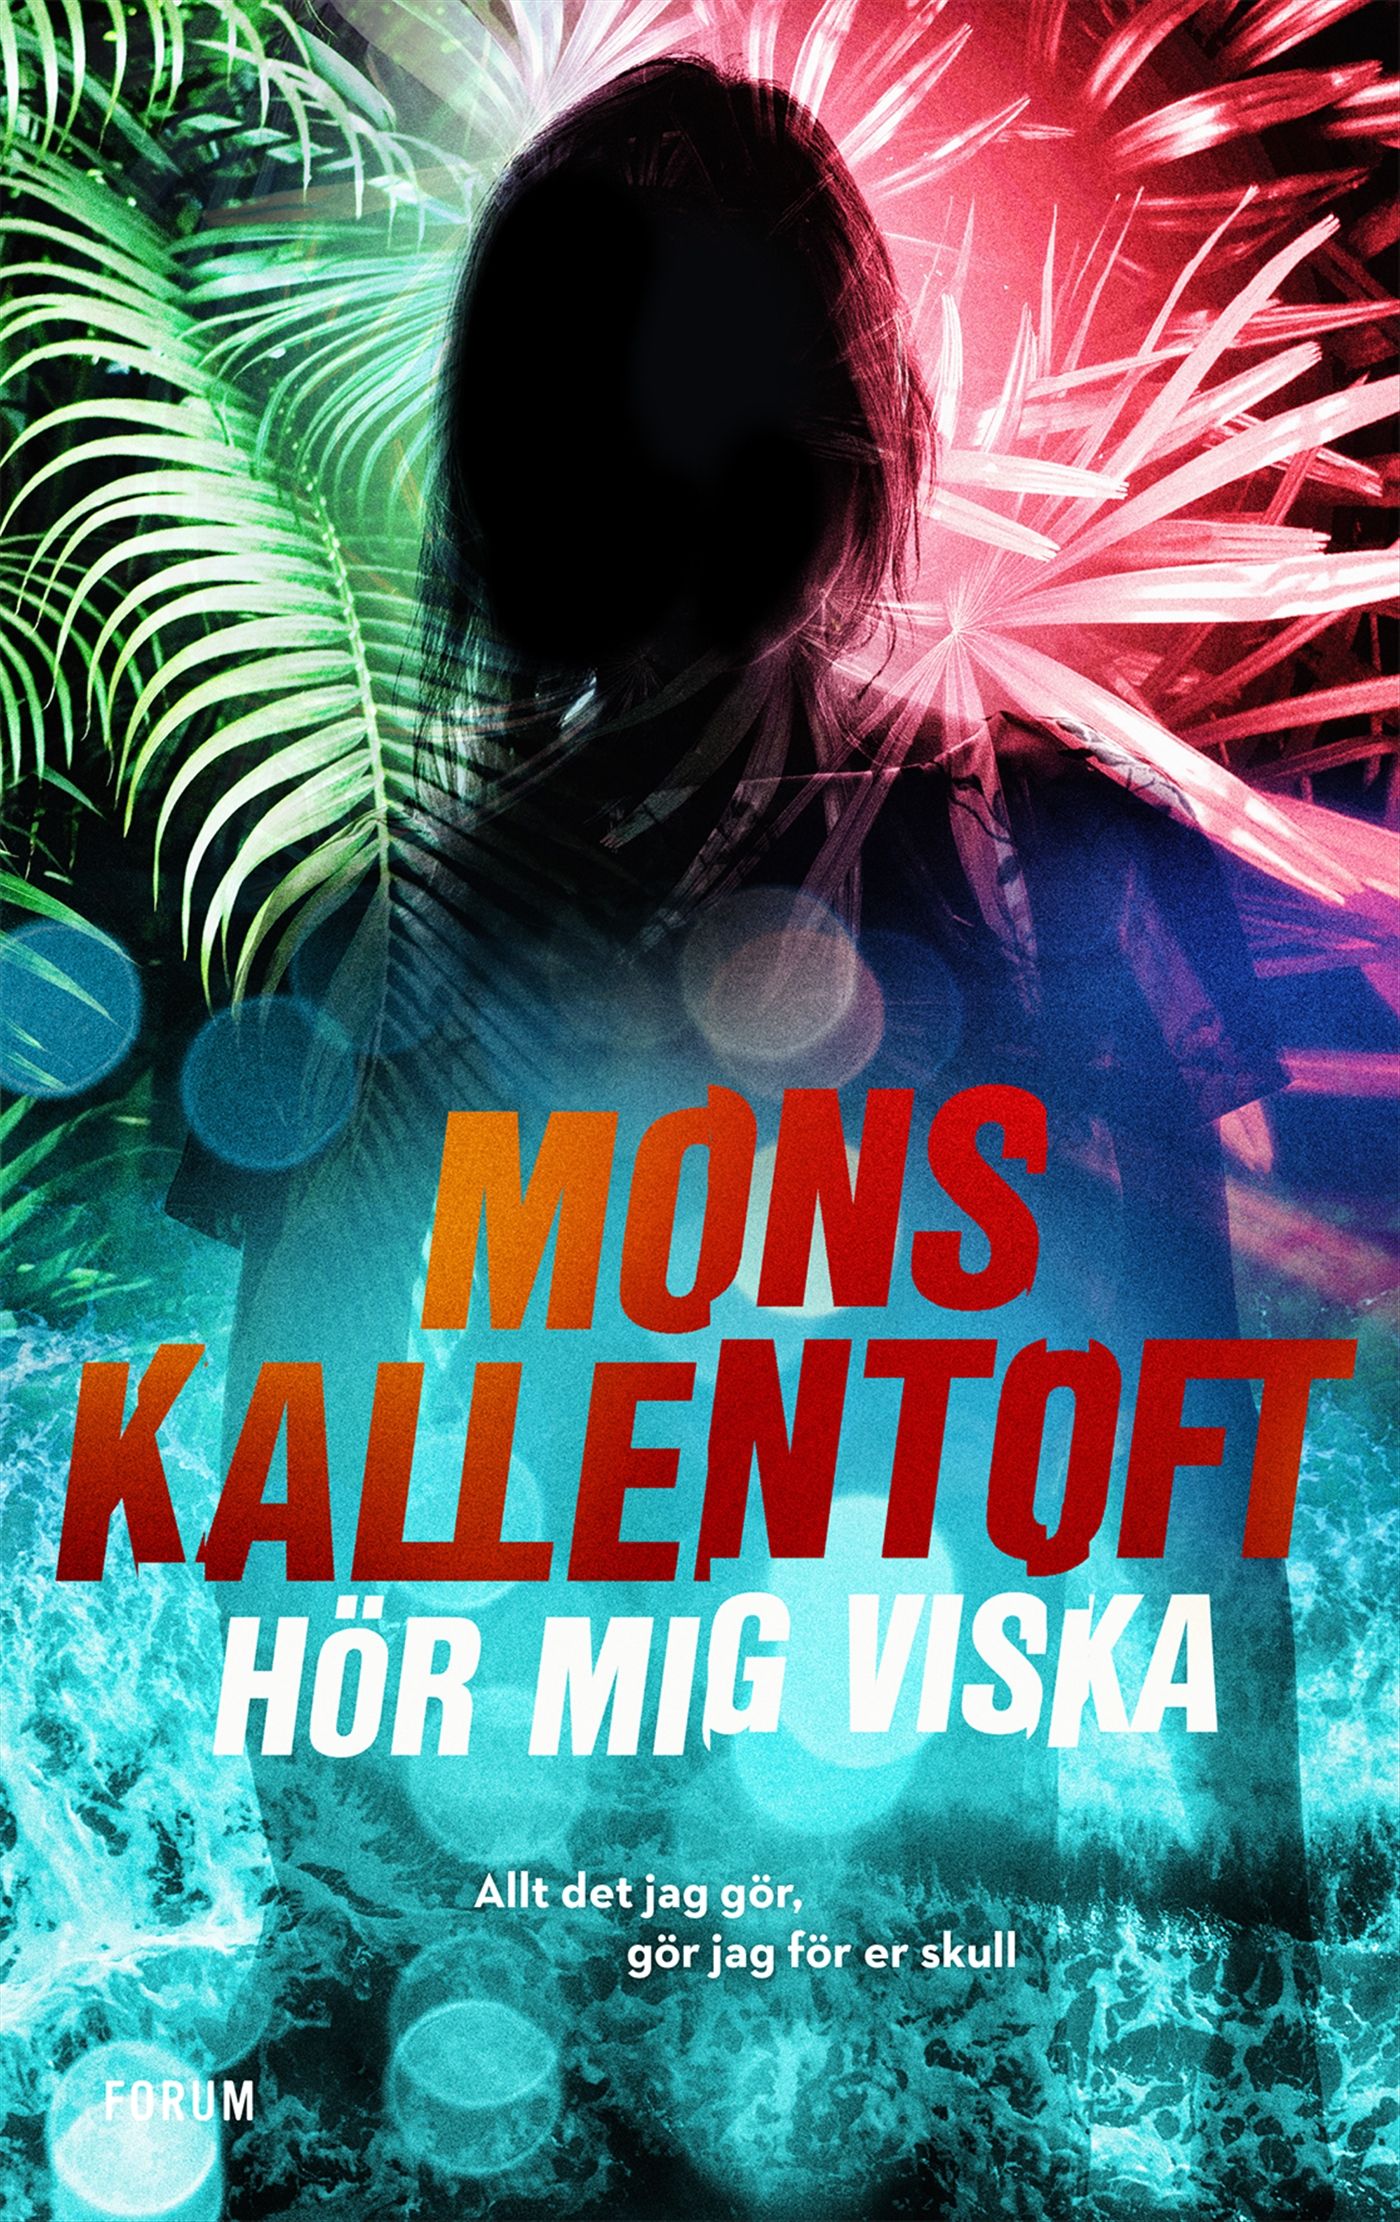 Hör mig viska, eBook by Mons Kallentoft